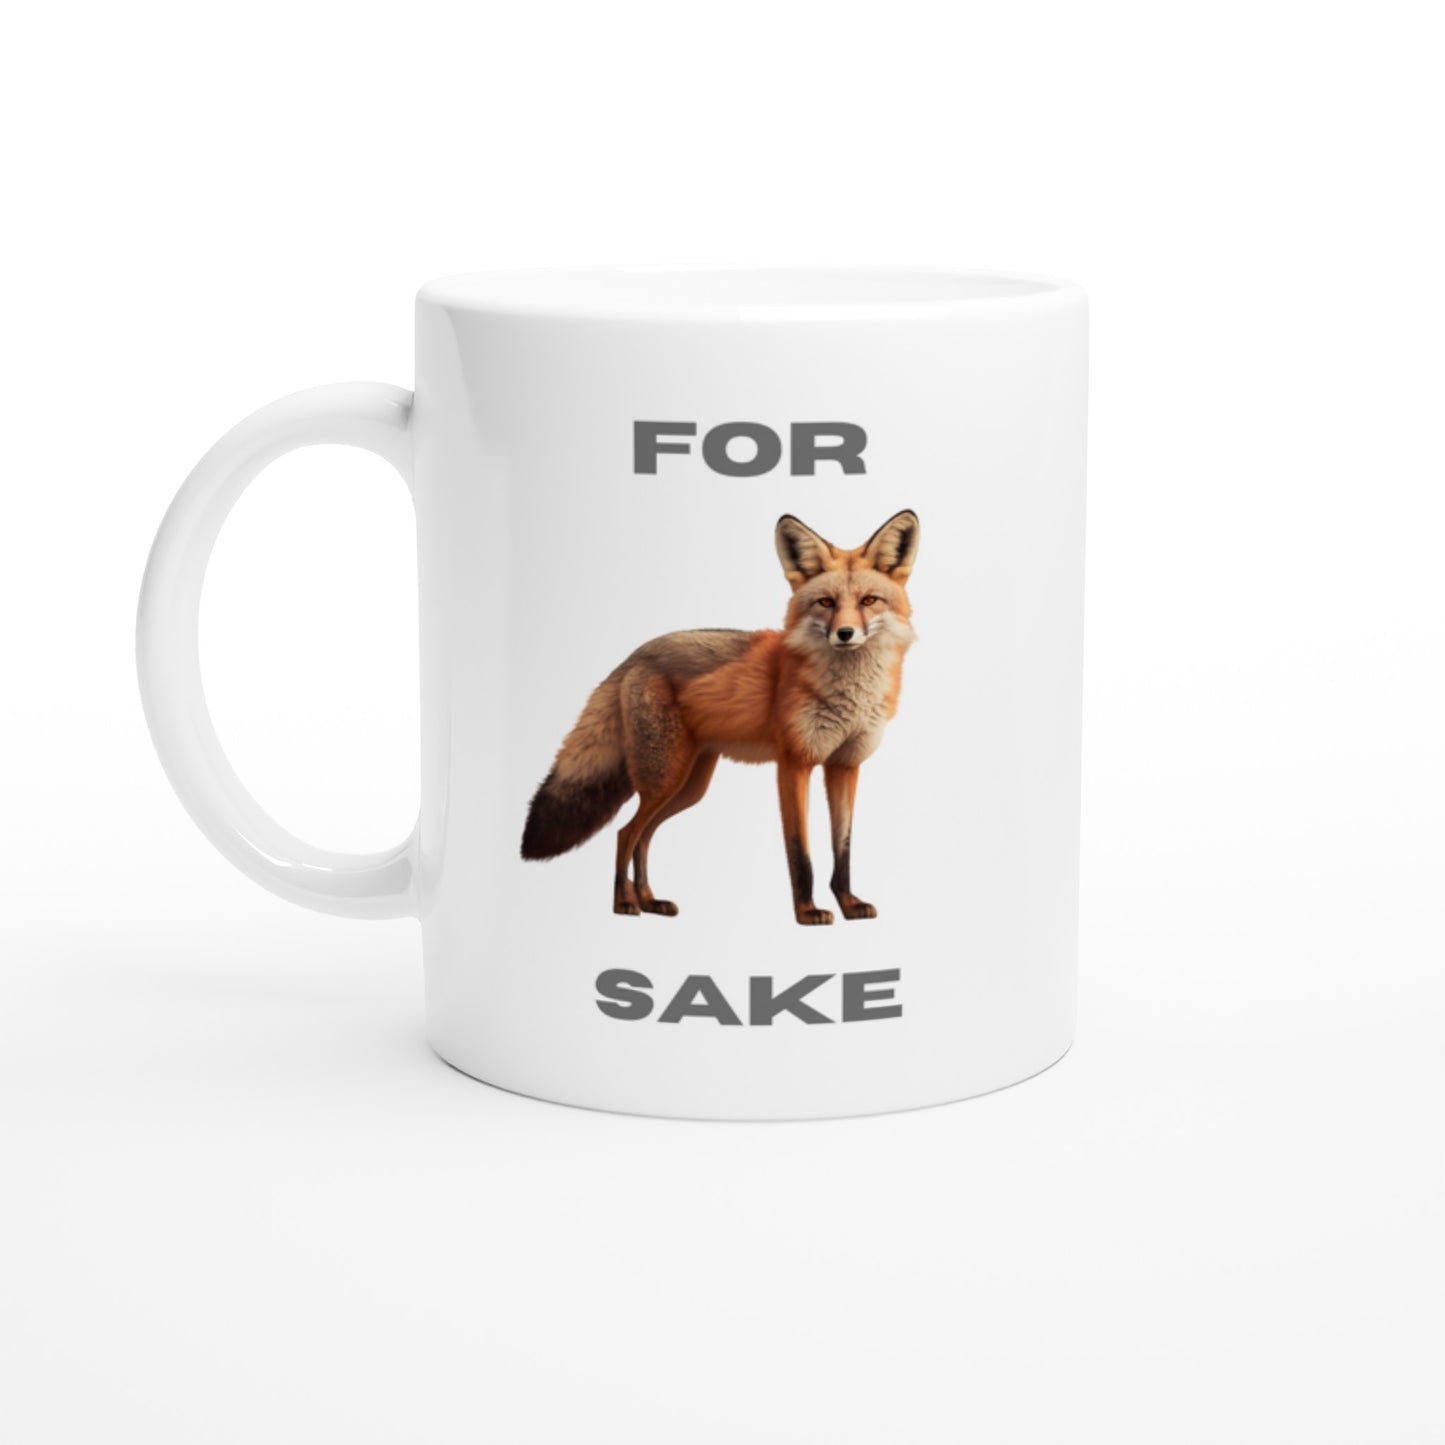 For fox sake fox mug